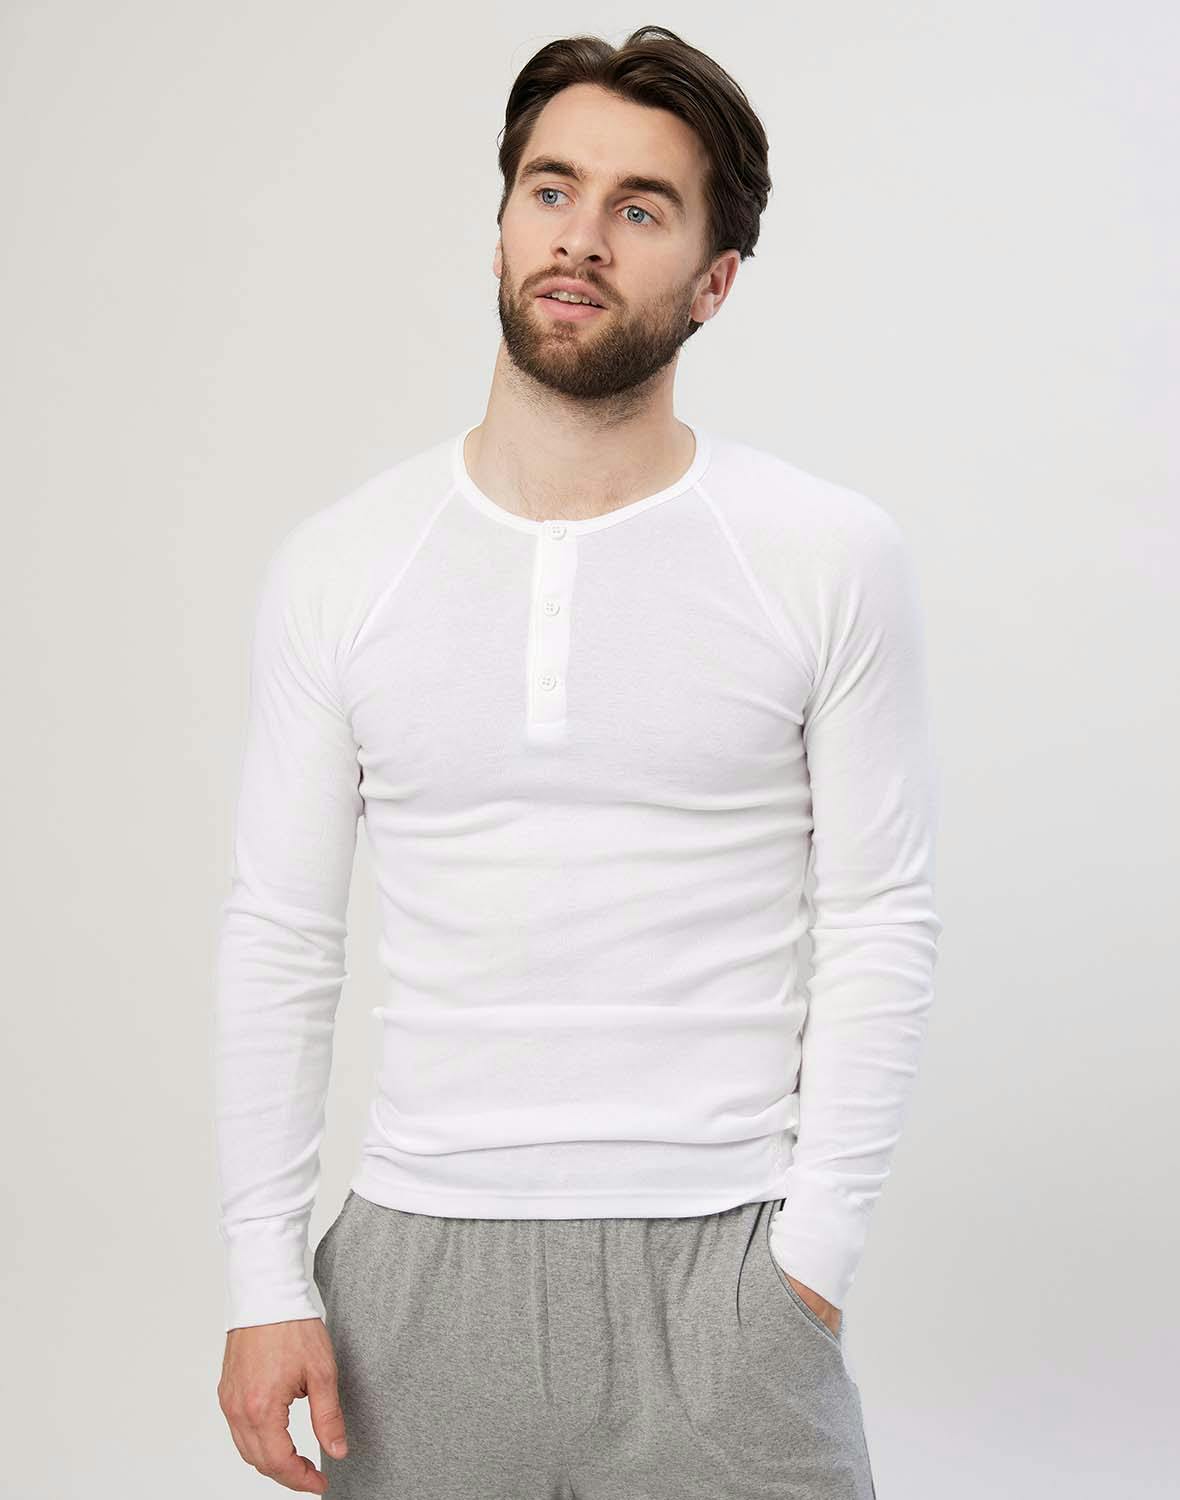 Premium classique - tee-shirt à manches longues en coton pour homme - Blanc  - Dilling